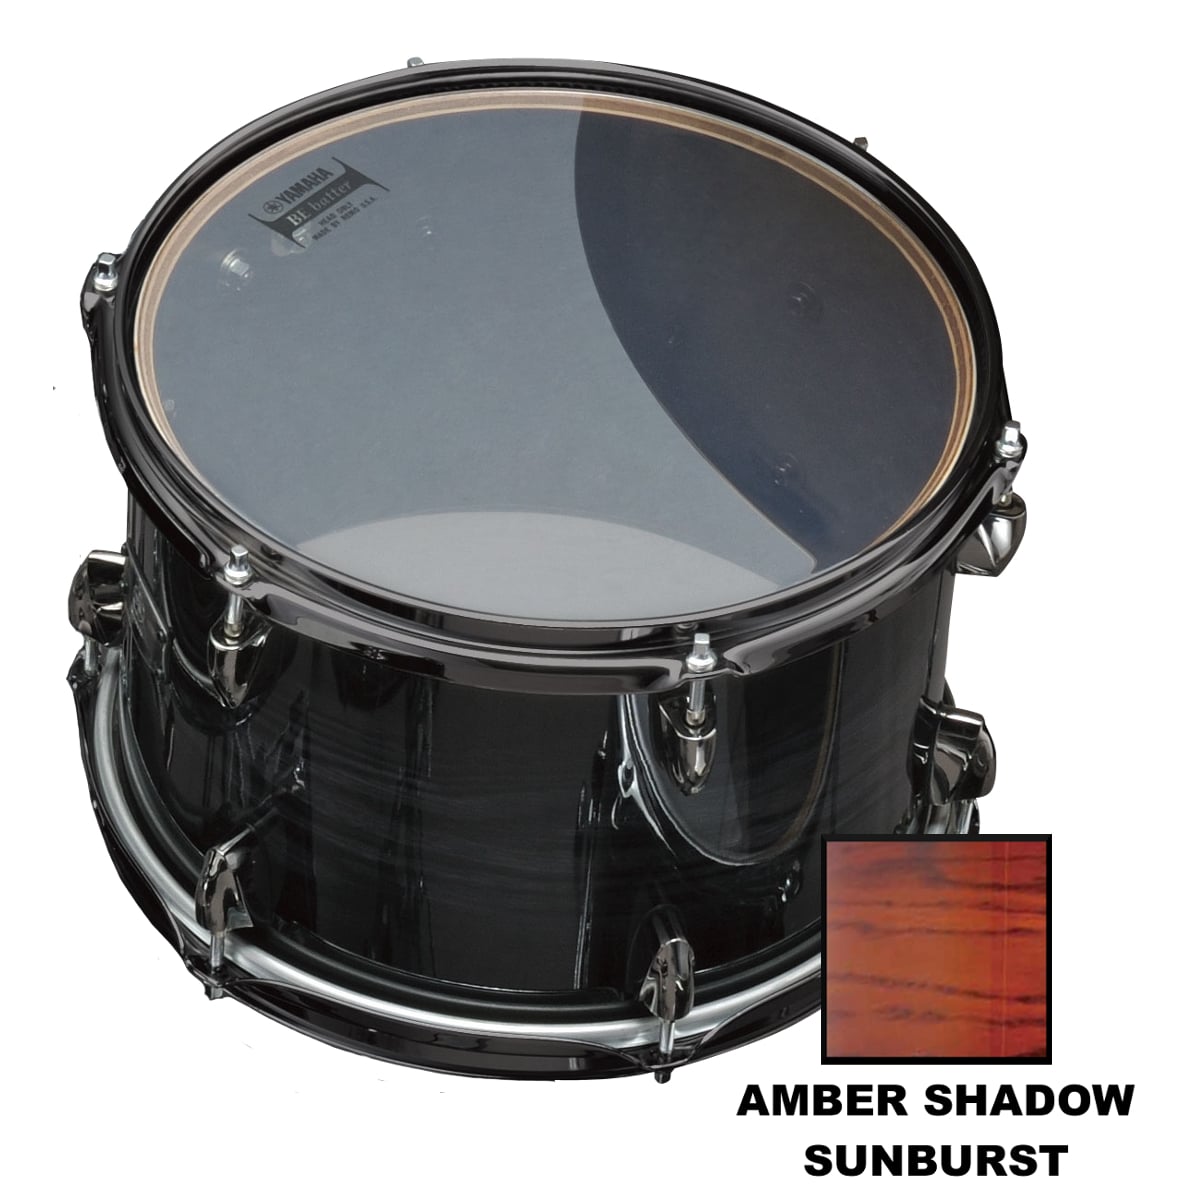 Lnt0807 - 8 X 7 - Amber Shadow Sunburst pour 235